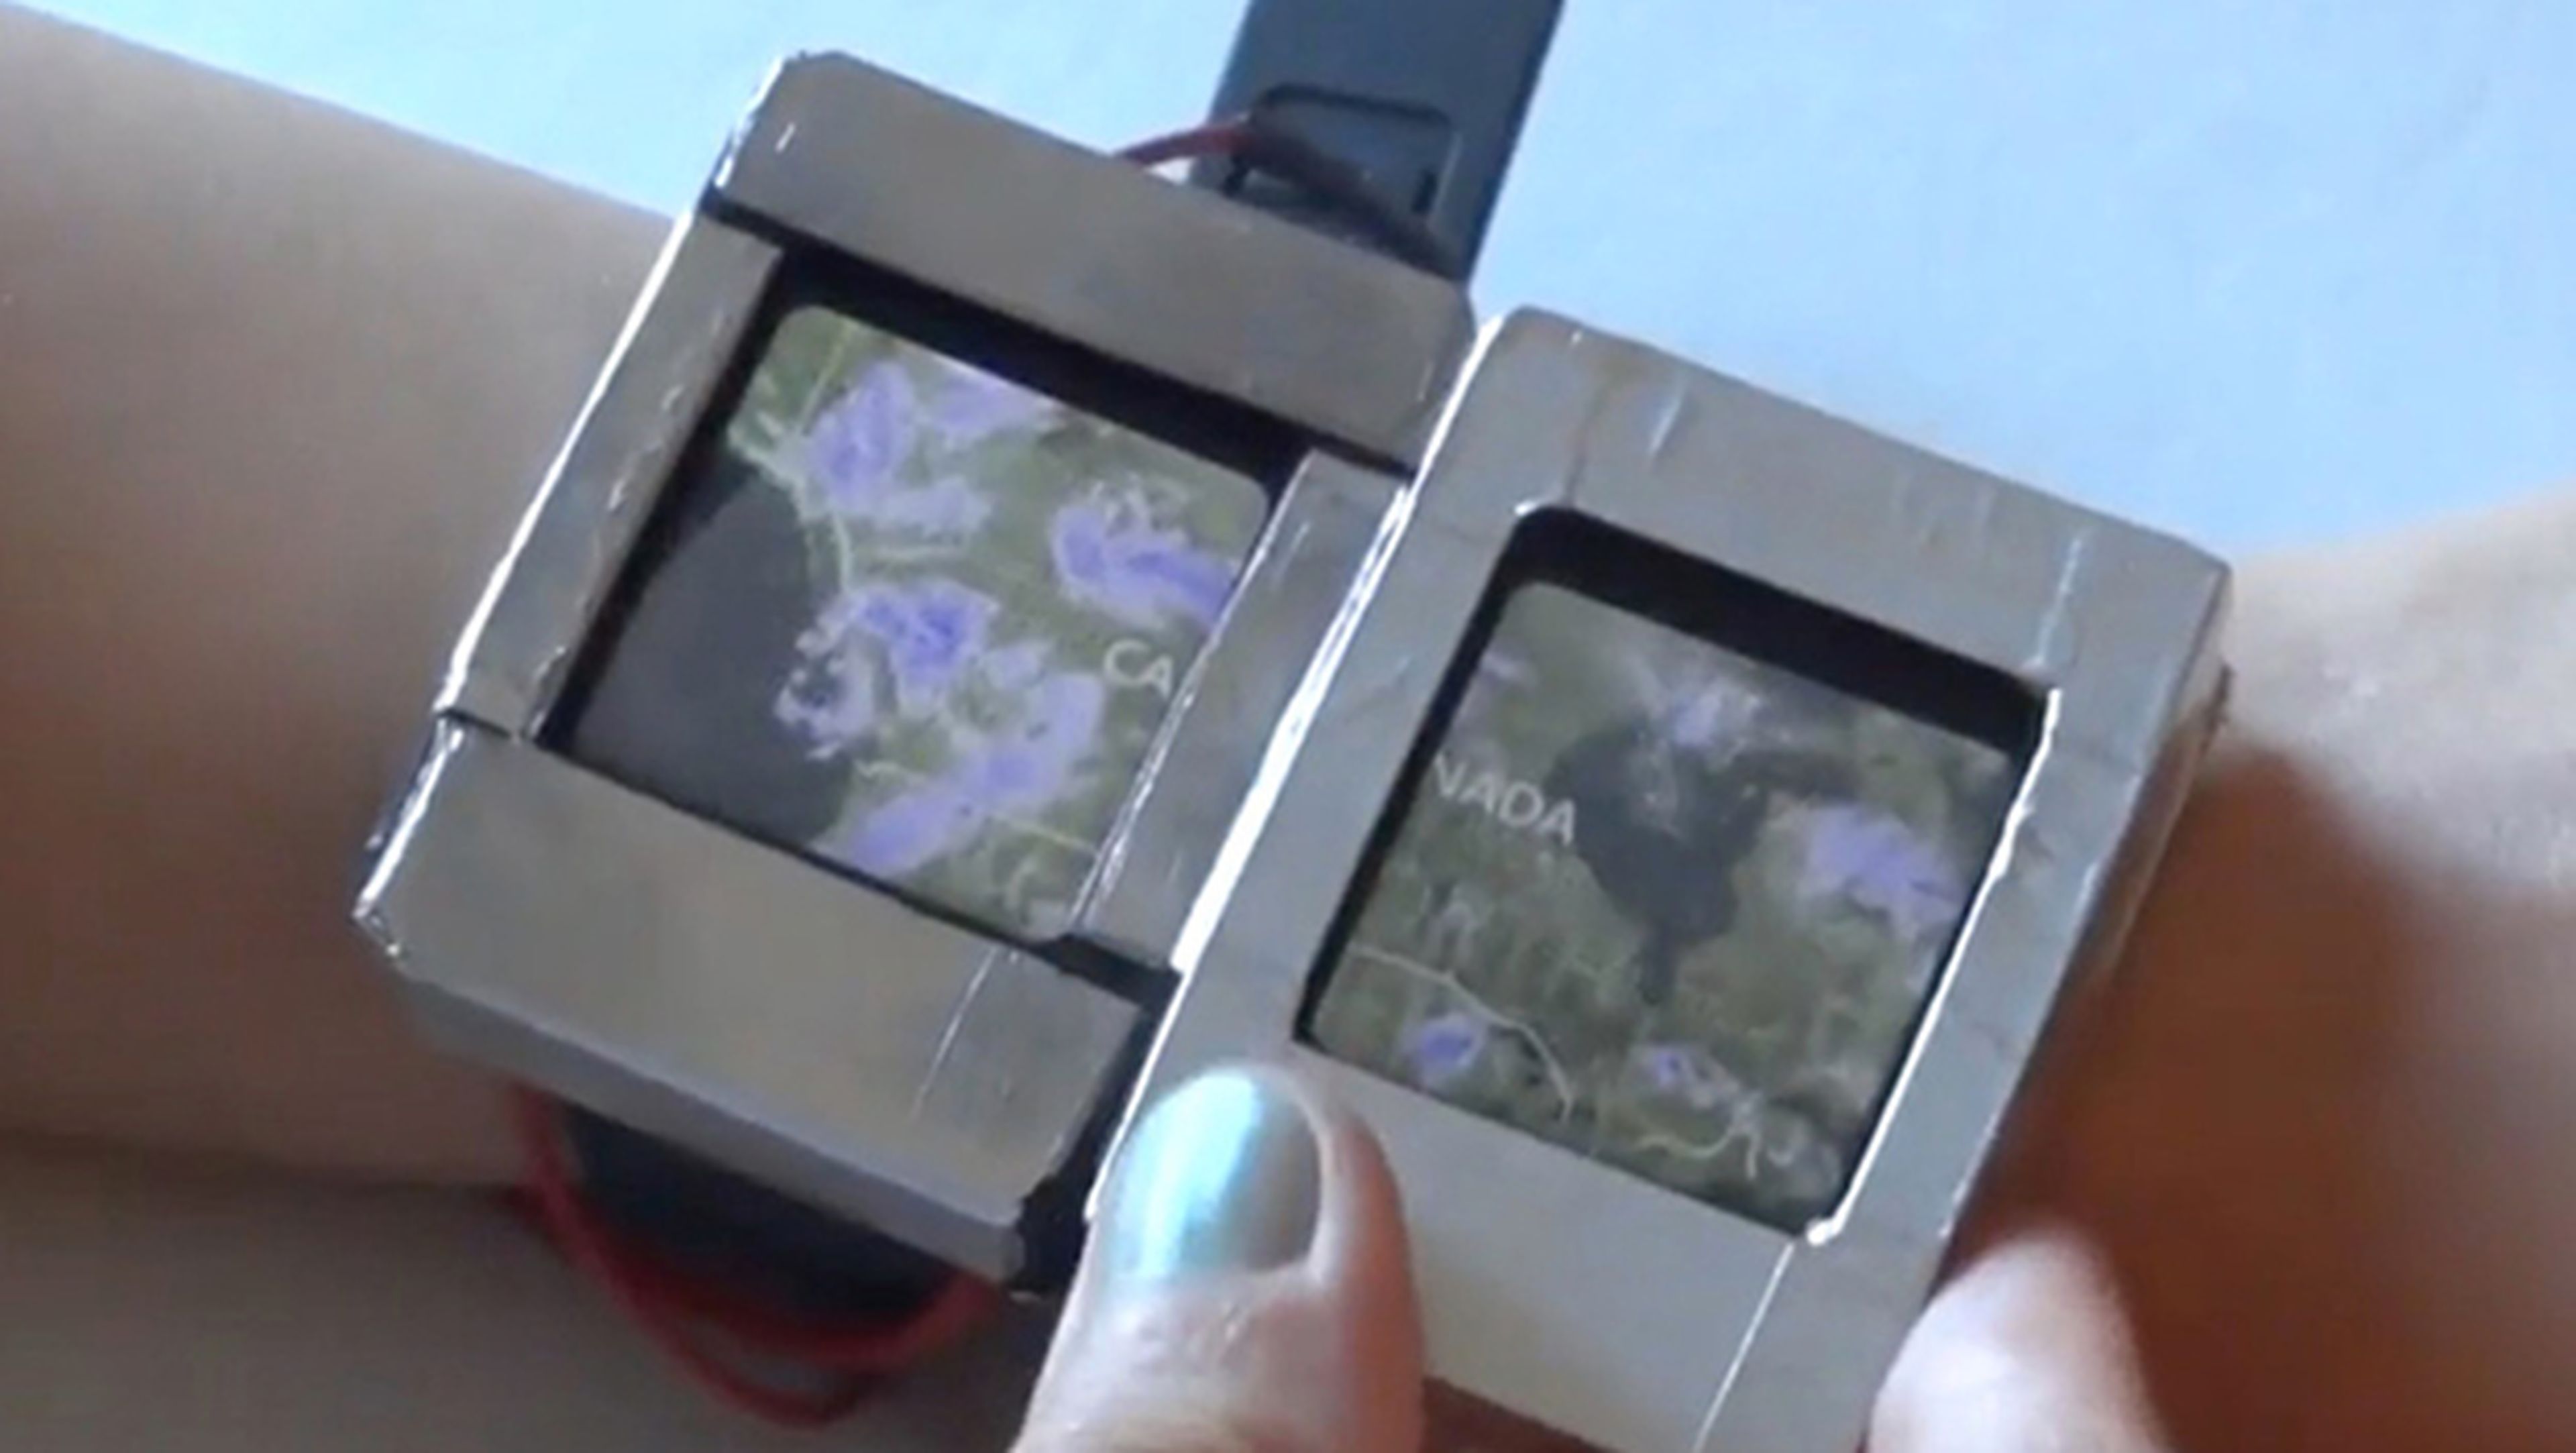 Doppio, el smartwatch de dos pantallas